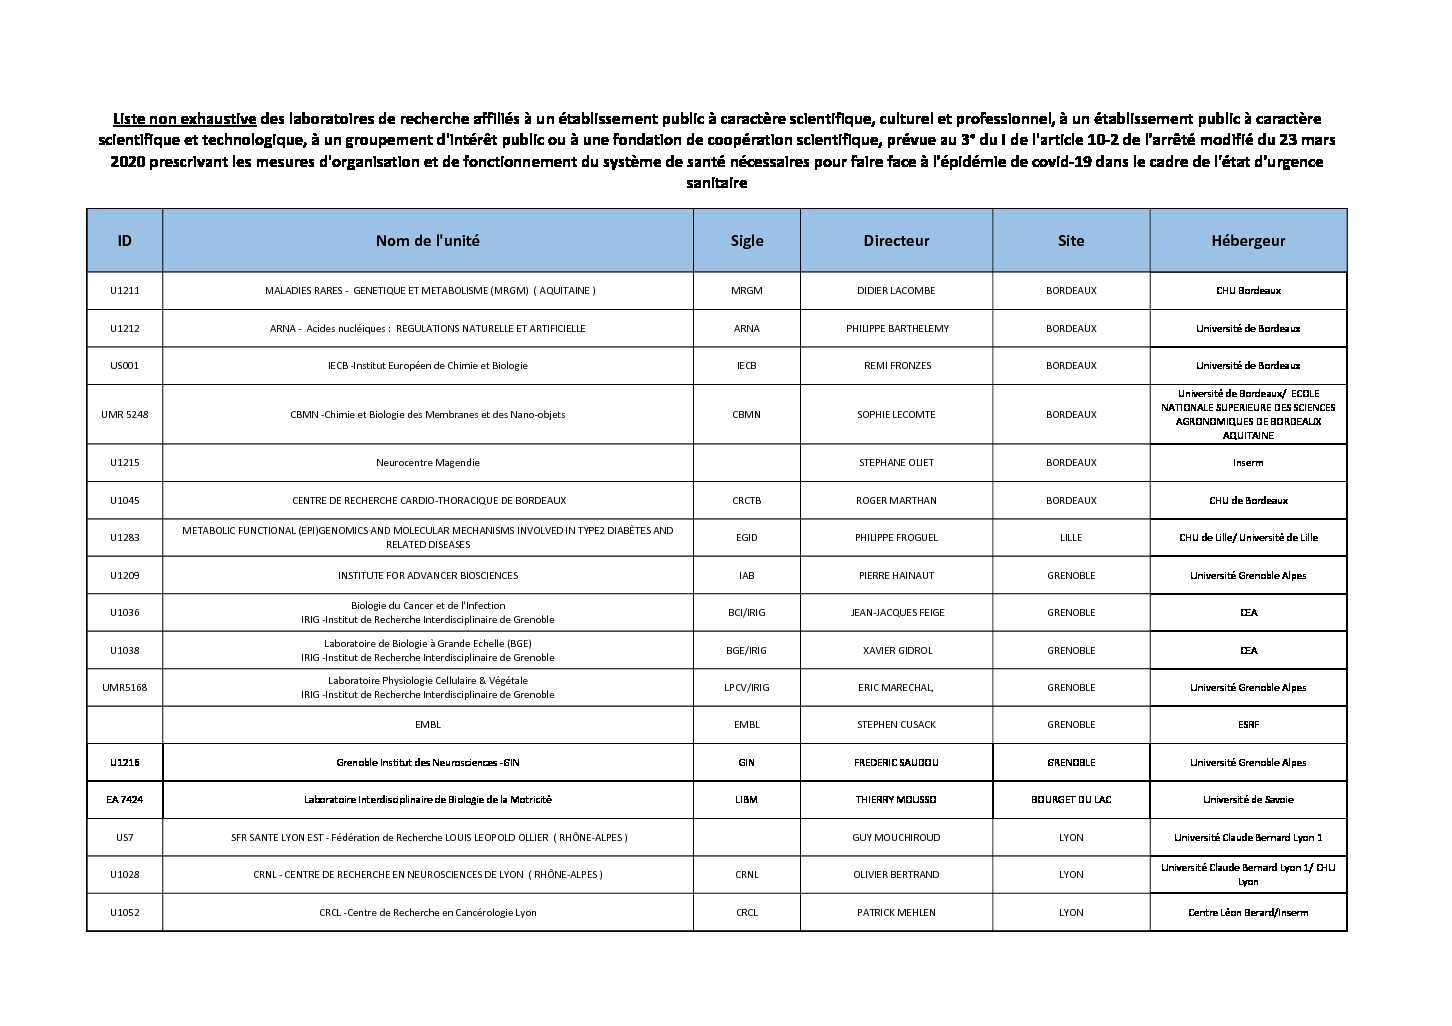 [PDF] Liste non exhaustive des laboratoires de recherche affiliés à un